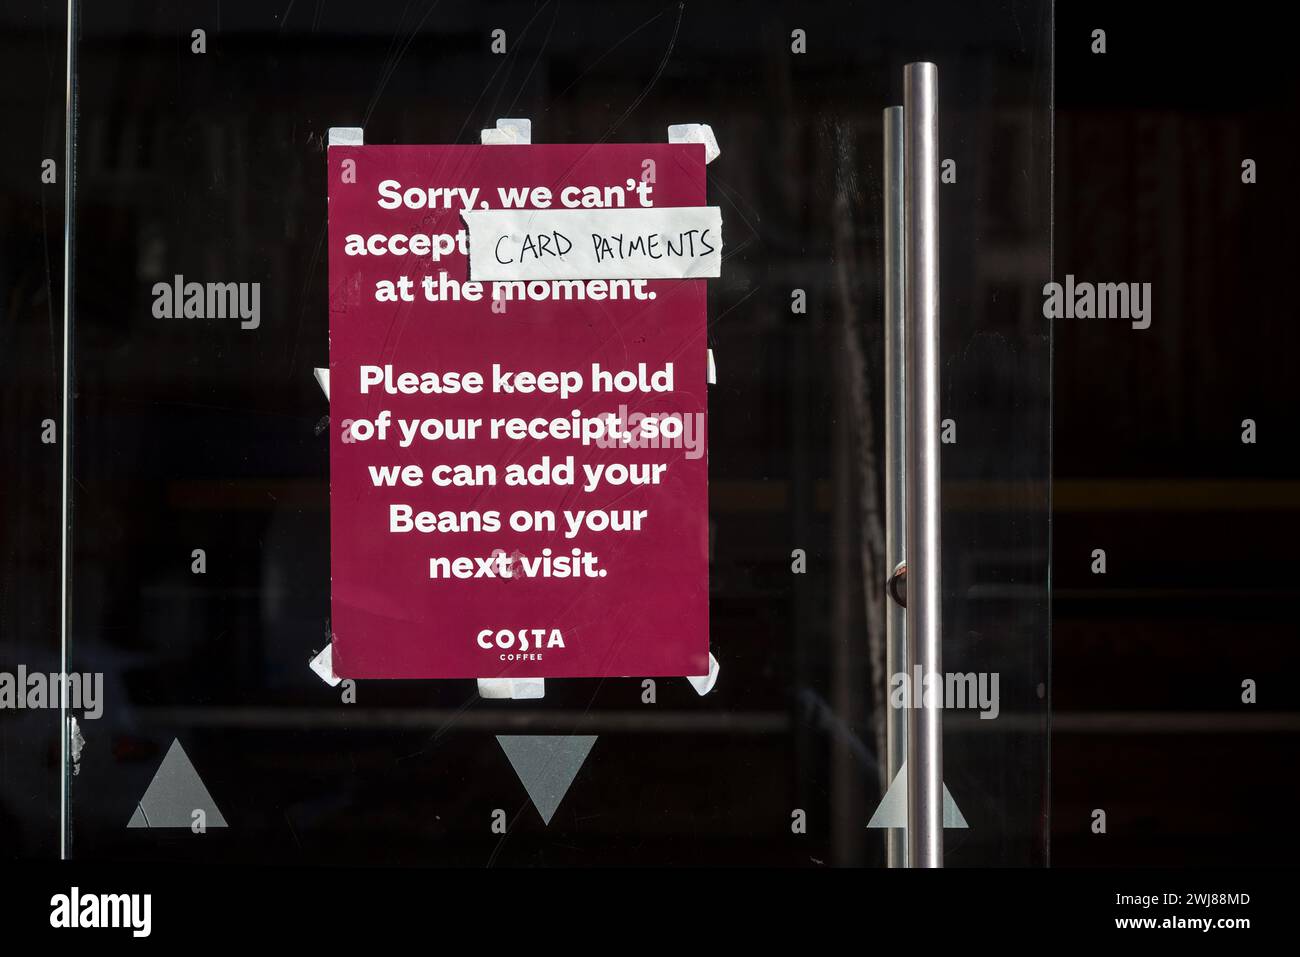 Un avviso sulla porta di un bar Costa informa i clienti che al momento non possono accettare pagamenti con carta di credito. Foto Stock